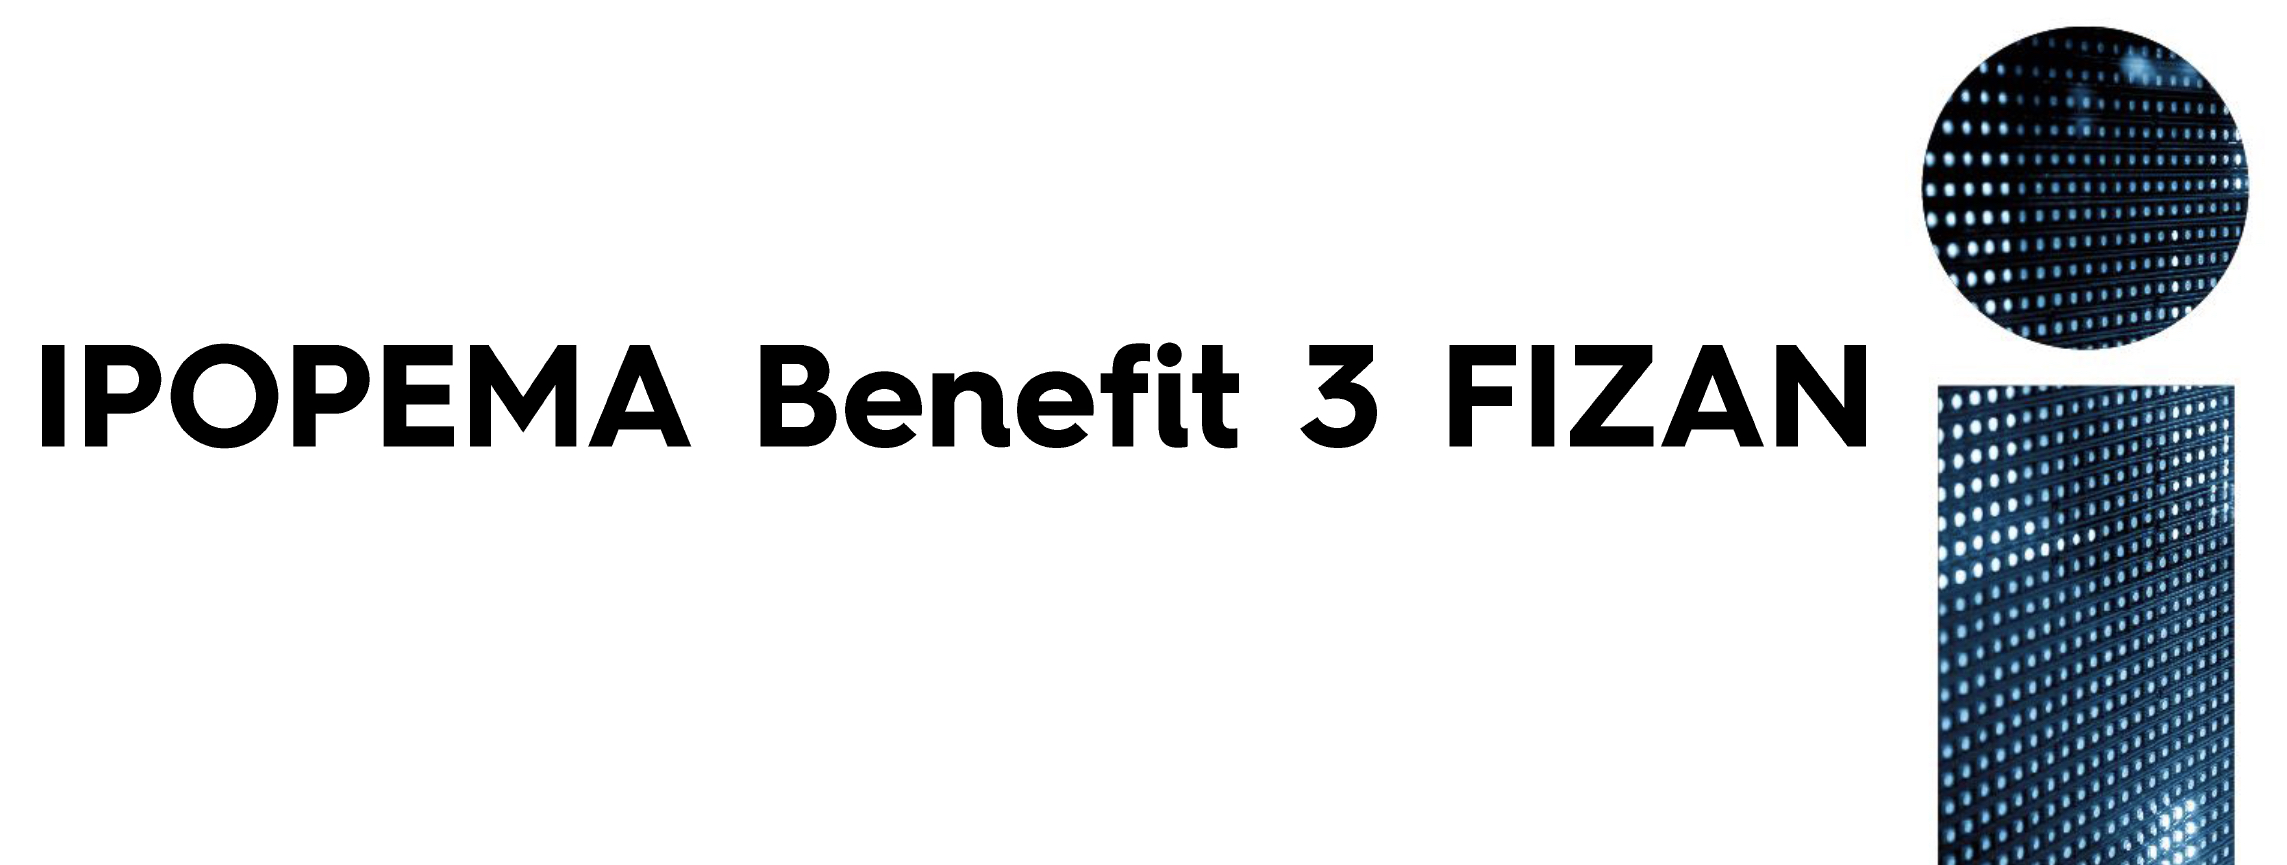 Ipopema Benefit 3 FIZAN już dostępny